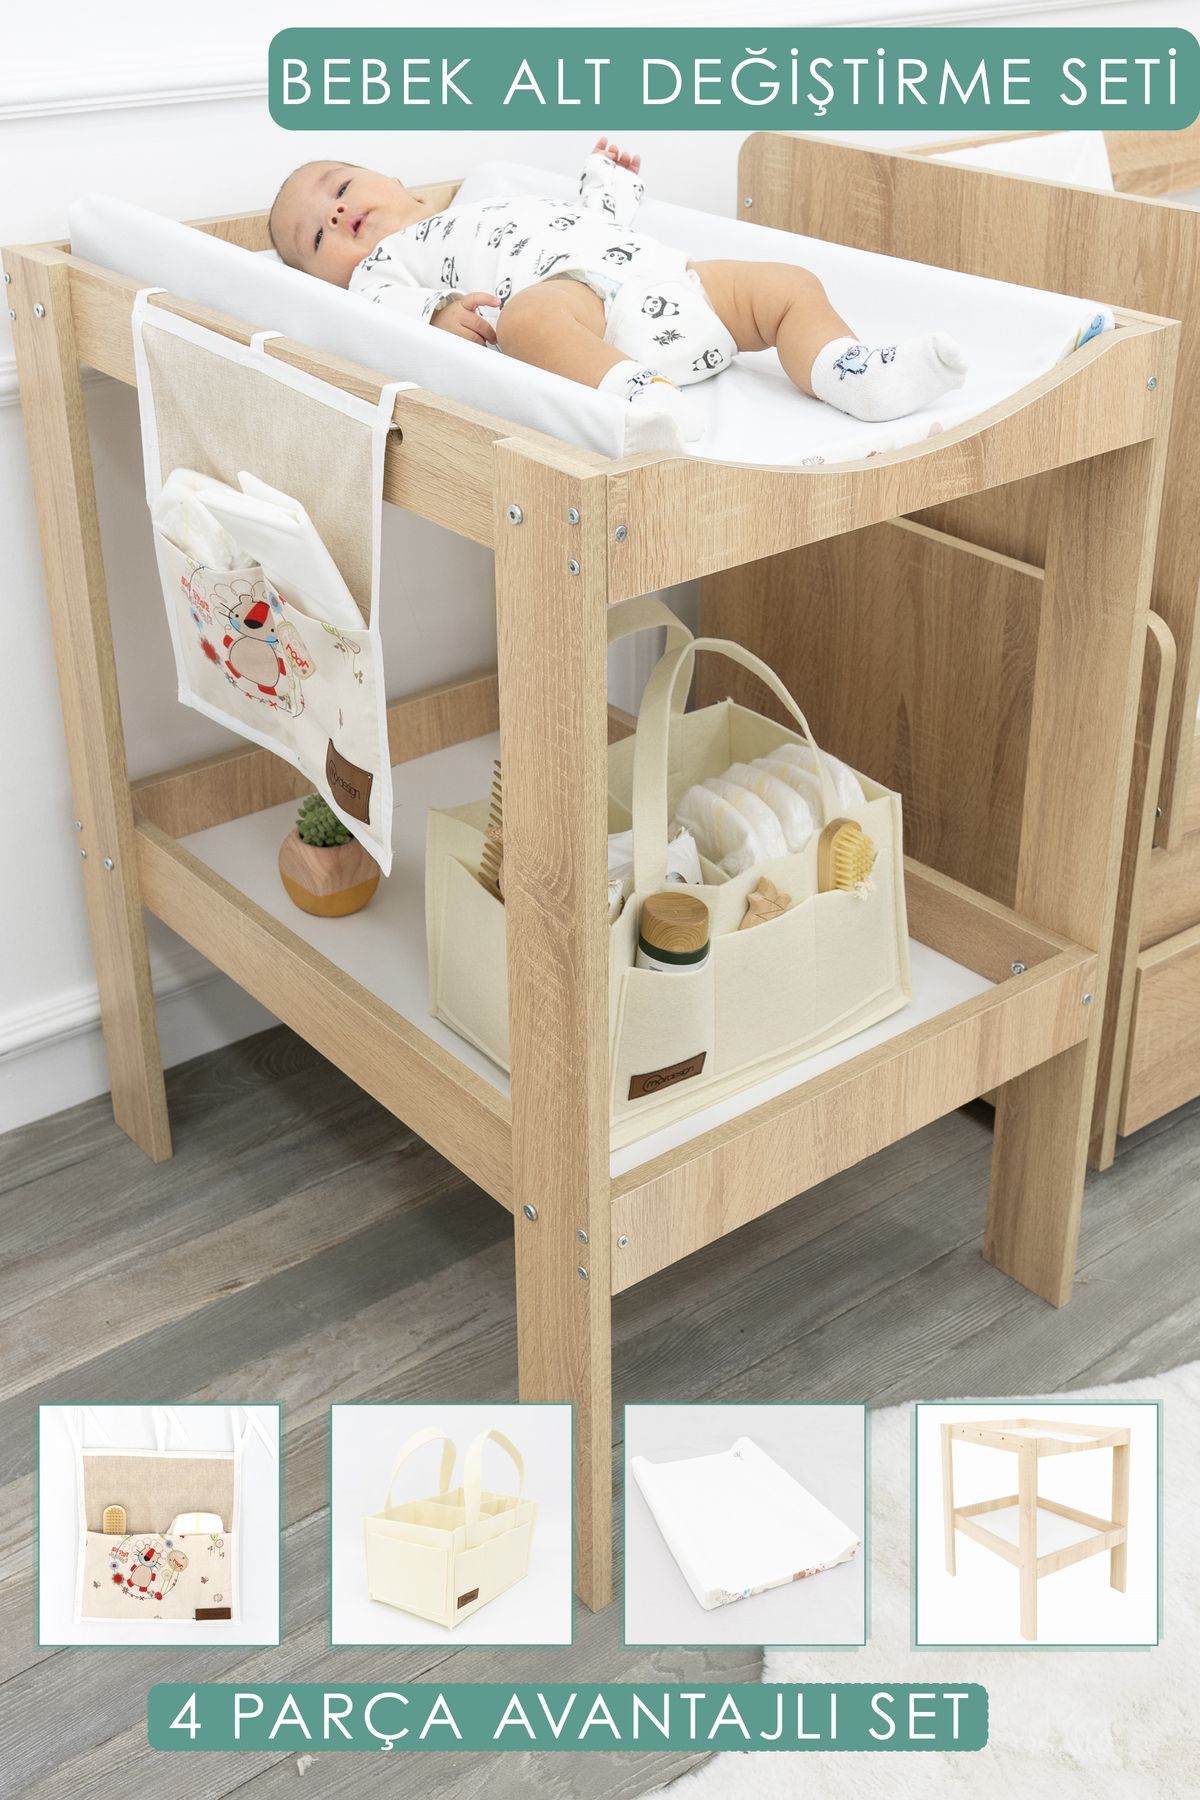 mordesign Bebek; 4'lü Avantajlı Set, Bebek Alt Değiştirme Masası,pedi,bağlamalı/sepet Organizer, Daisy, Kahve